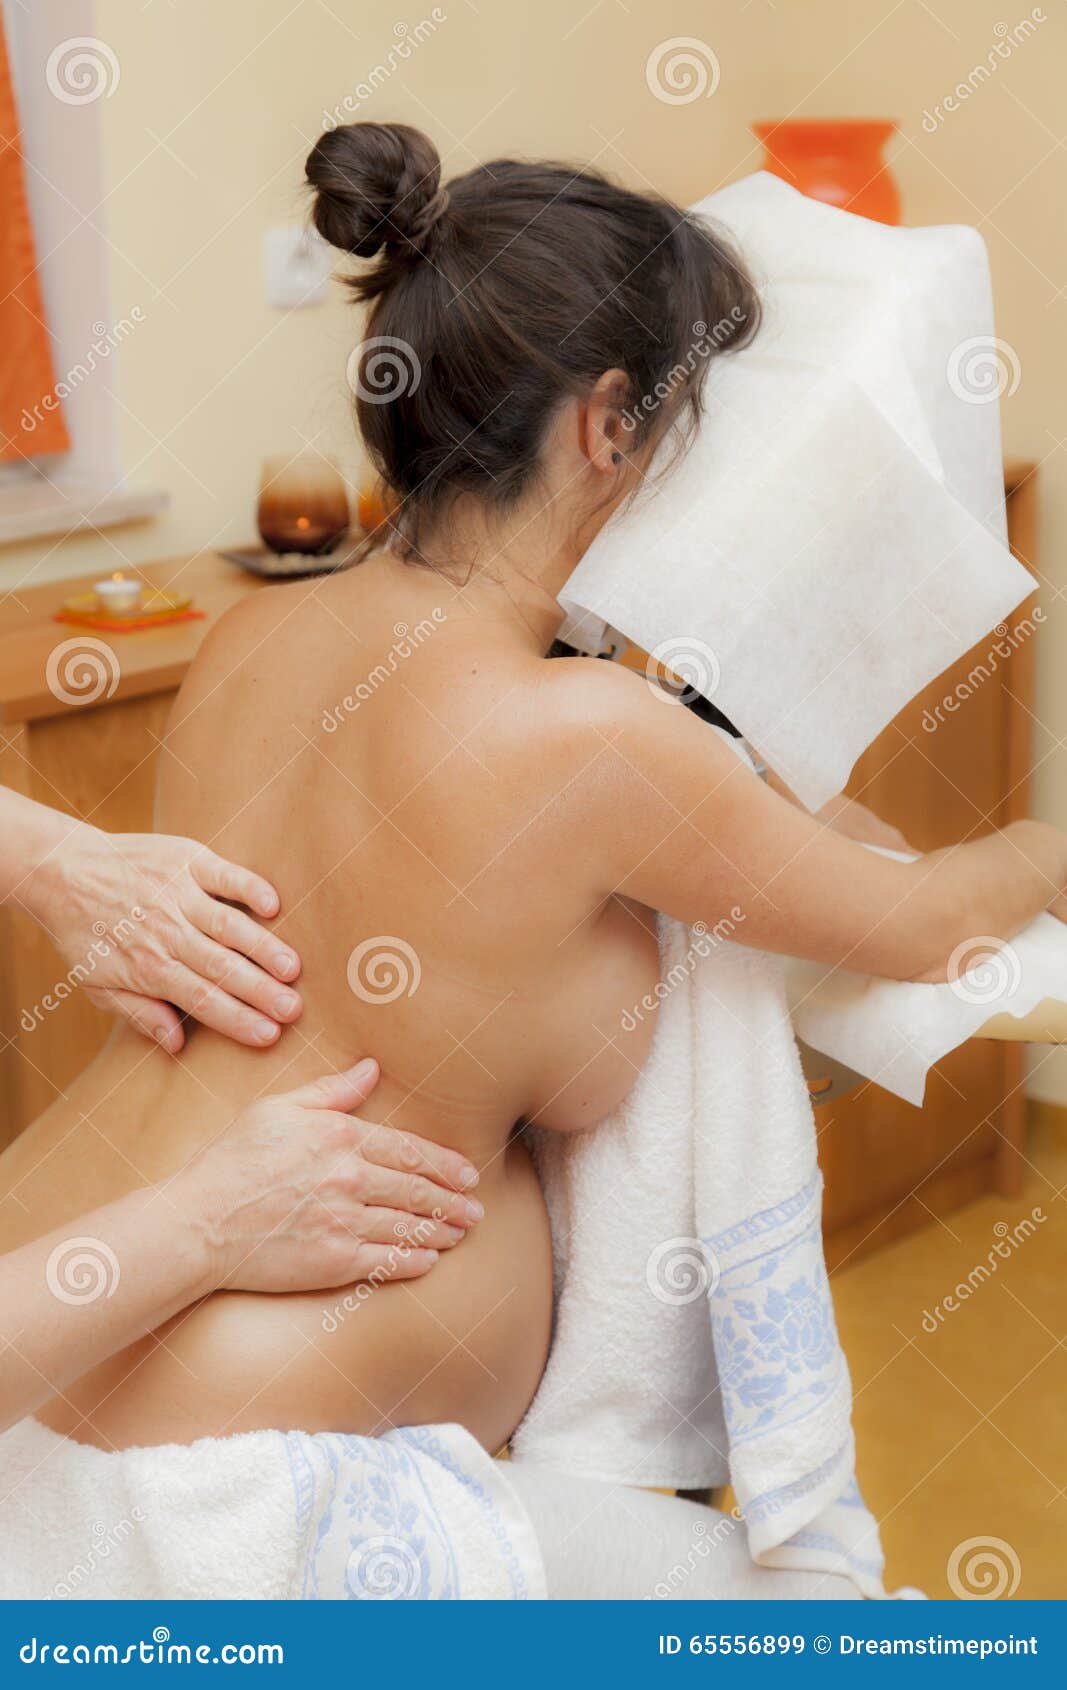 массаж грудью при беременности фото 26